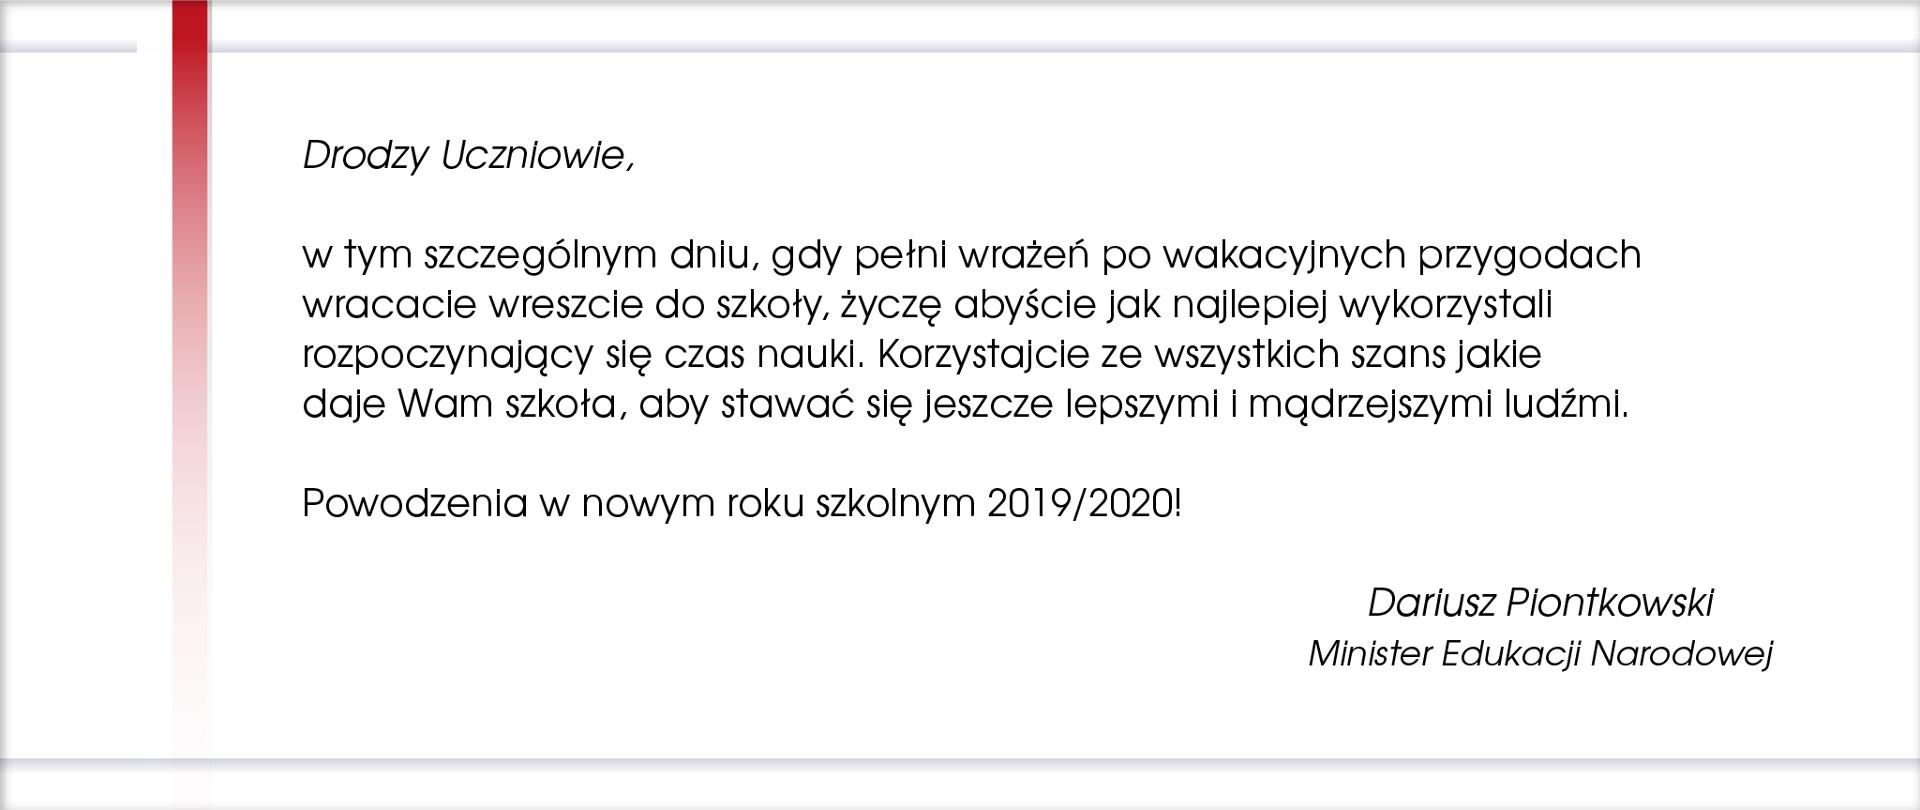 Życzenia Ministra Edukacji Narodowej na rozpoczynający się rok szkolny 2019/2020